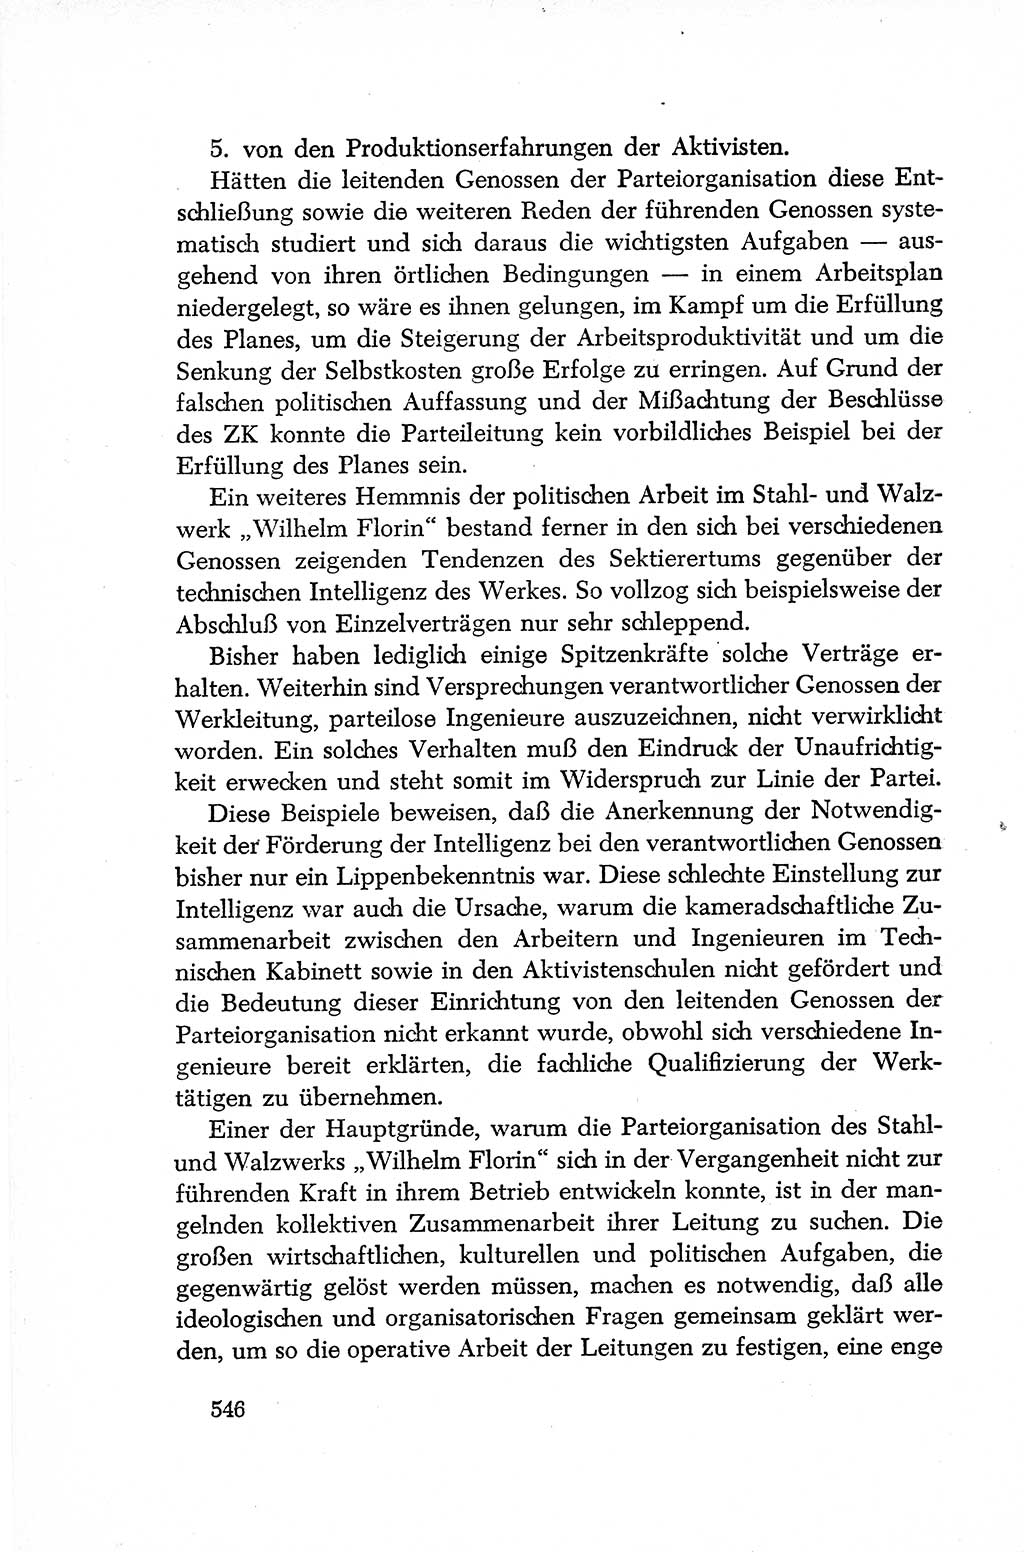 Dokumente der Sozialistischen Einheitspartei Deutschlands (SED) [Deutsche Demokratische Republik (DDR)] 1952-1953, Seite 546 (Dok. SED DDR 1952-1953, S. 546)